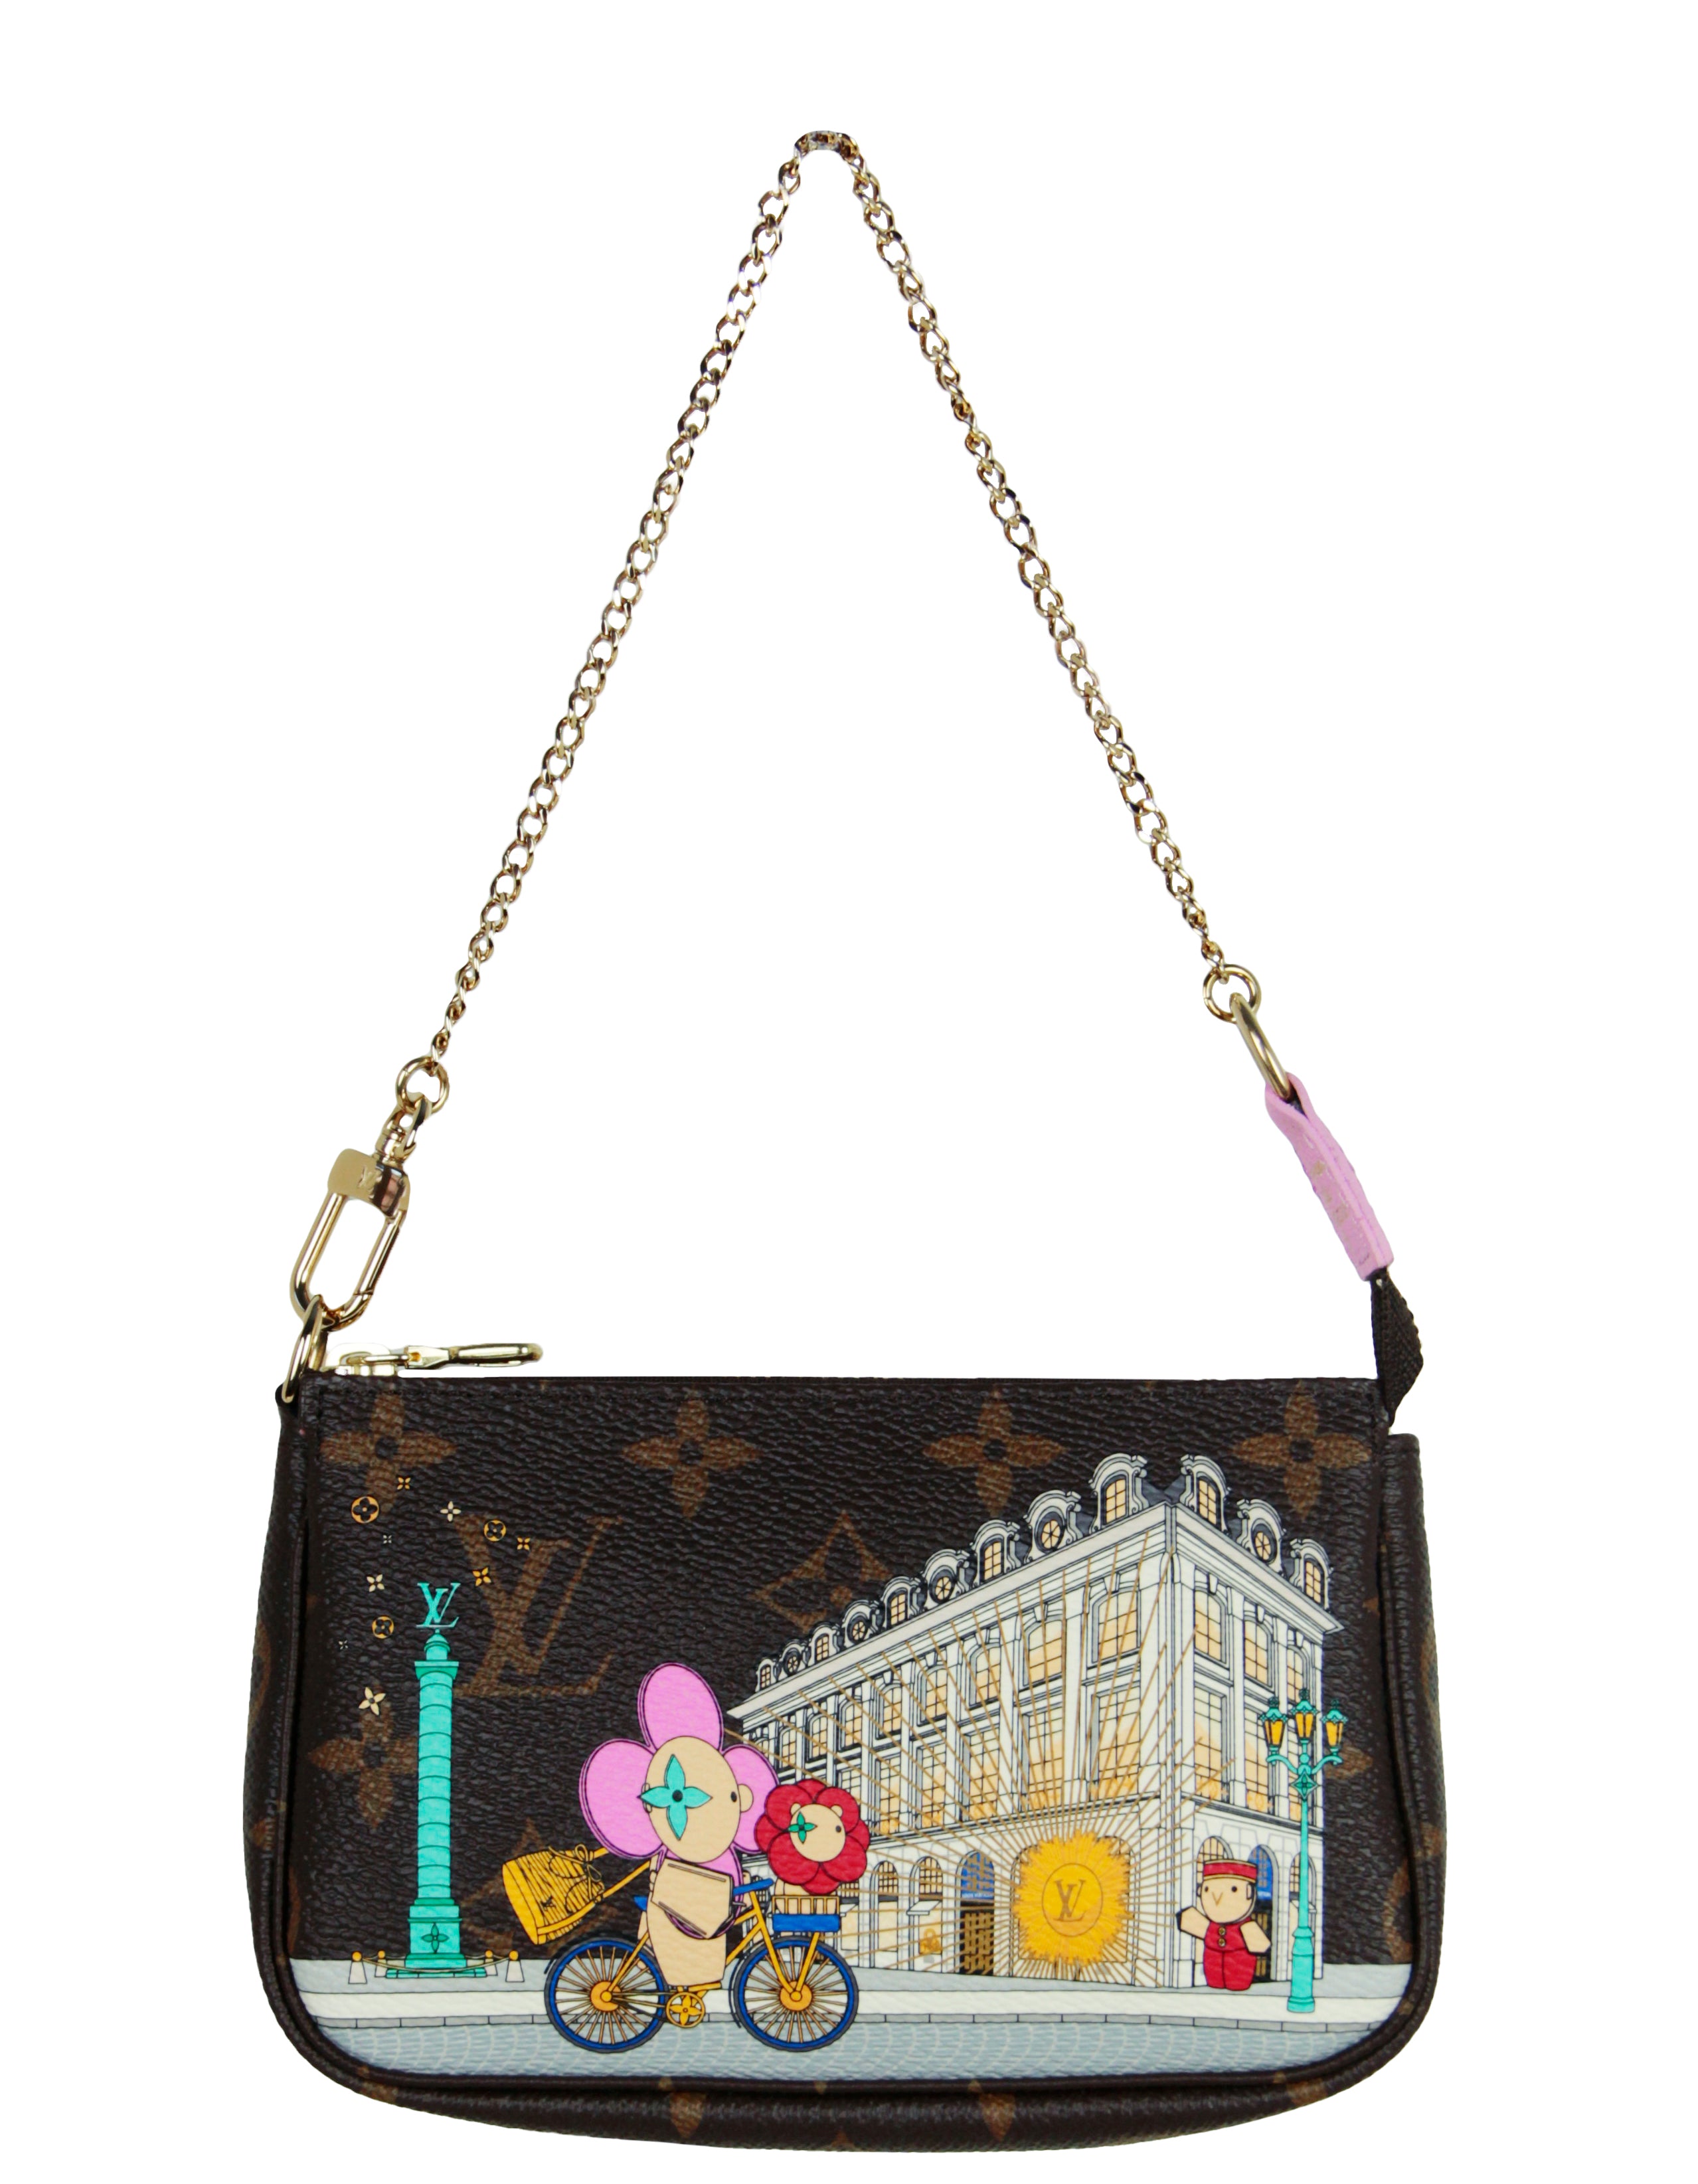 Louis Vuitton VIVIENNE HOLIDAYS 2022 PARIS Mini Pochette Accessoires/Bag.  M81760